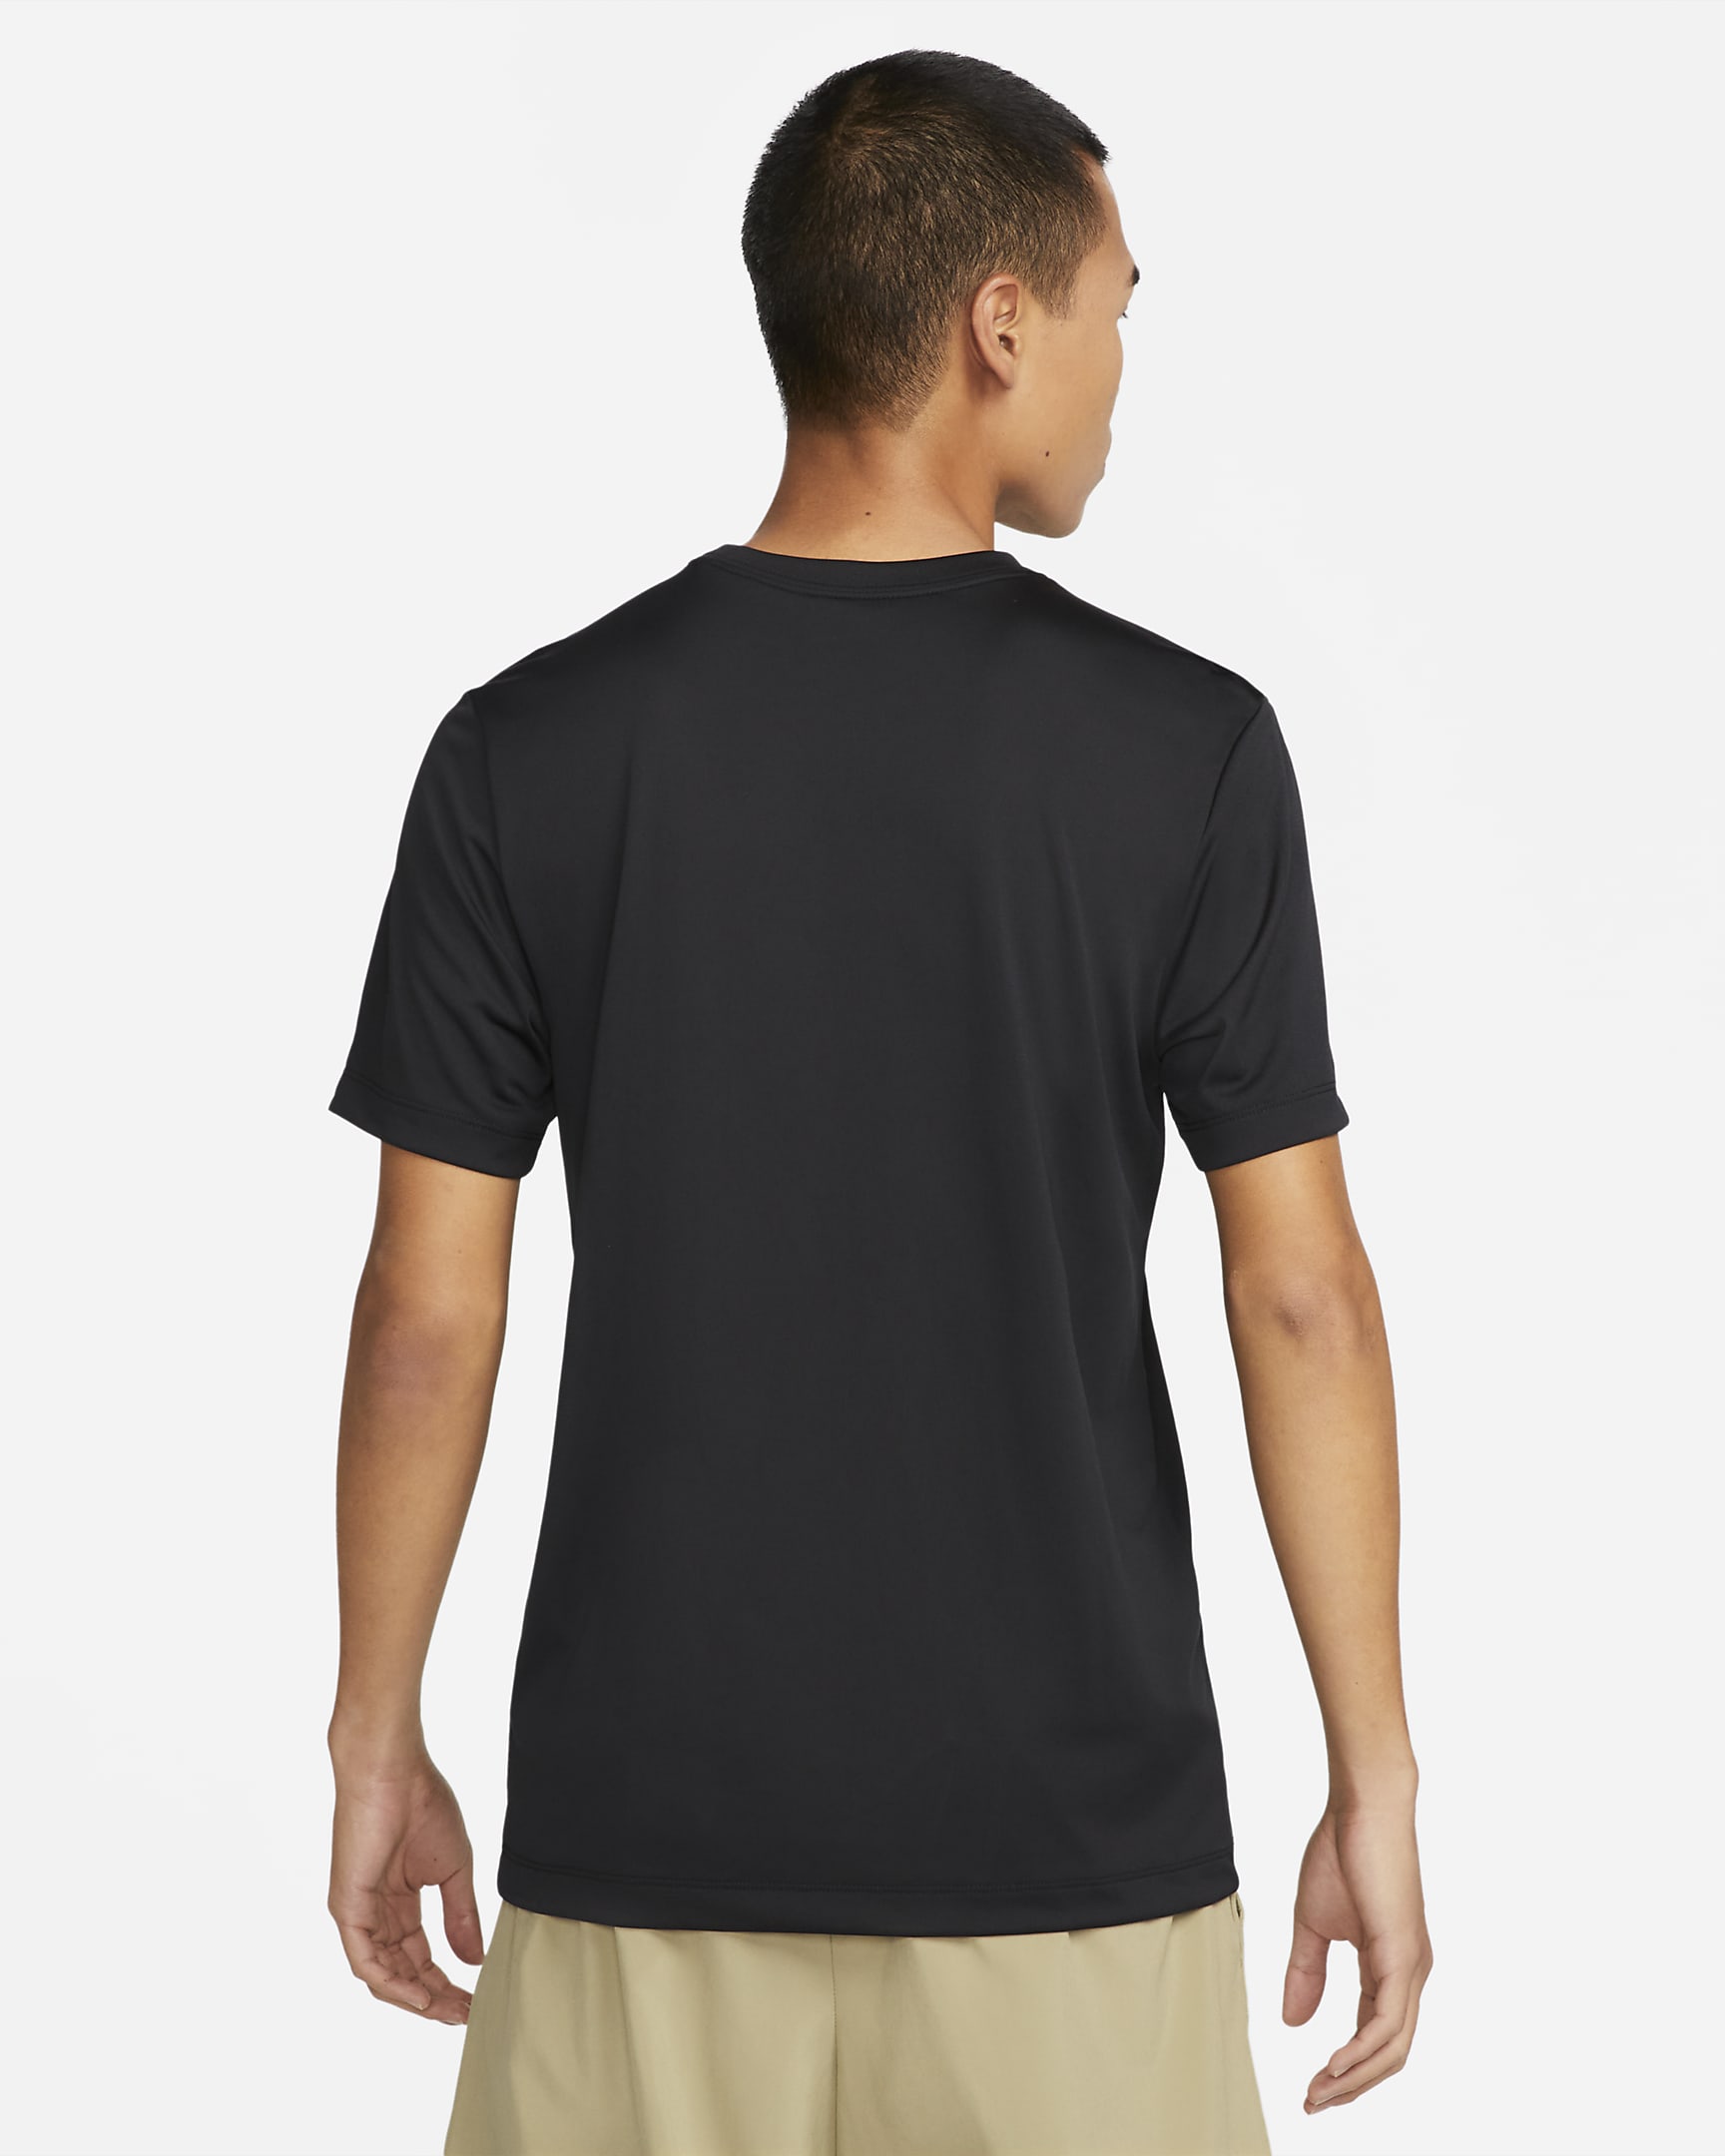 Nike Dri-FIT Men's Fitness T-Shirt. Nike PH